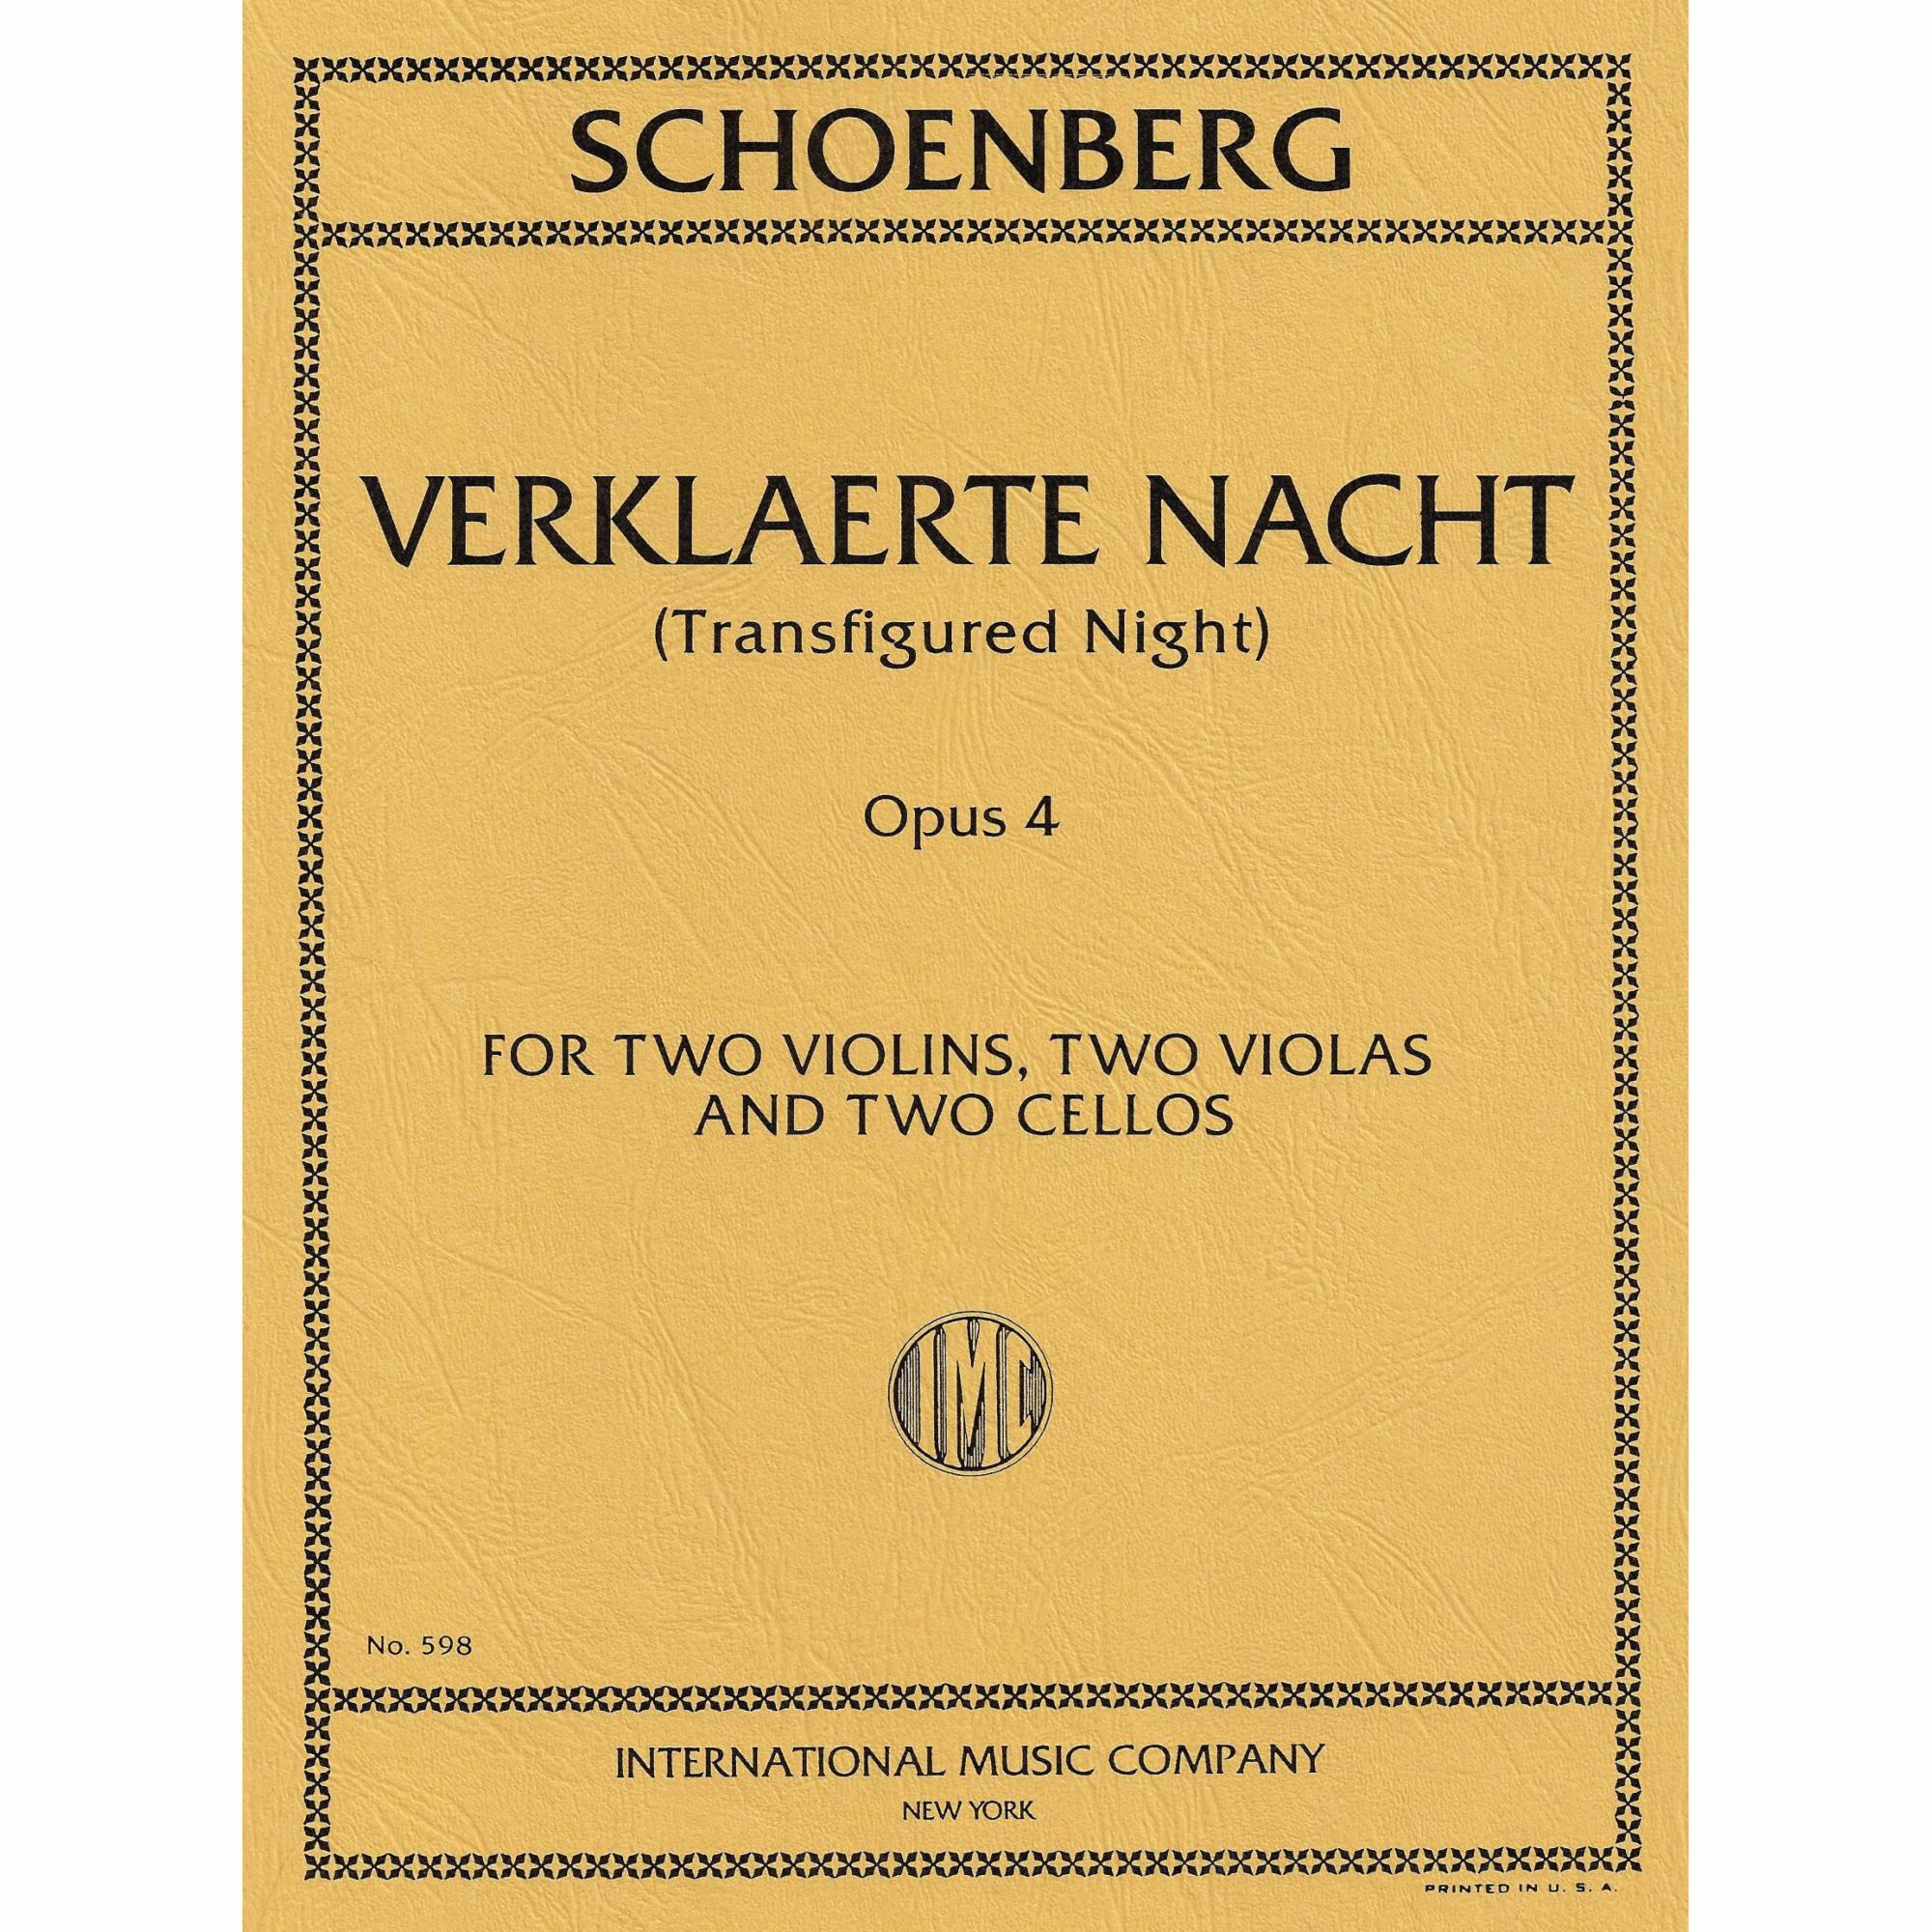 Schoenberg -- Verklaerte Nacht, Op. 4 for String Sextet